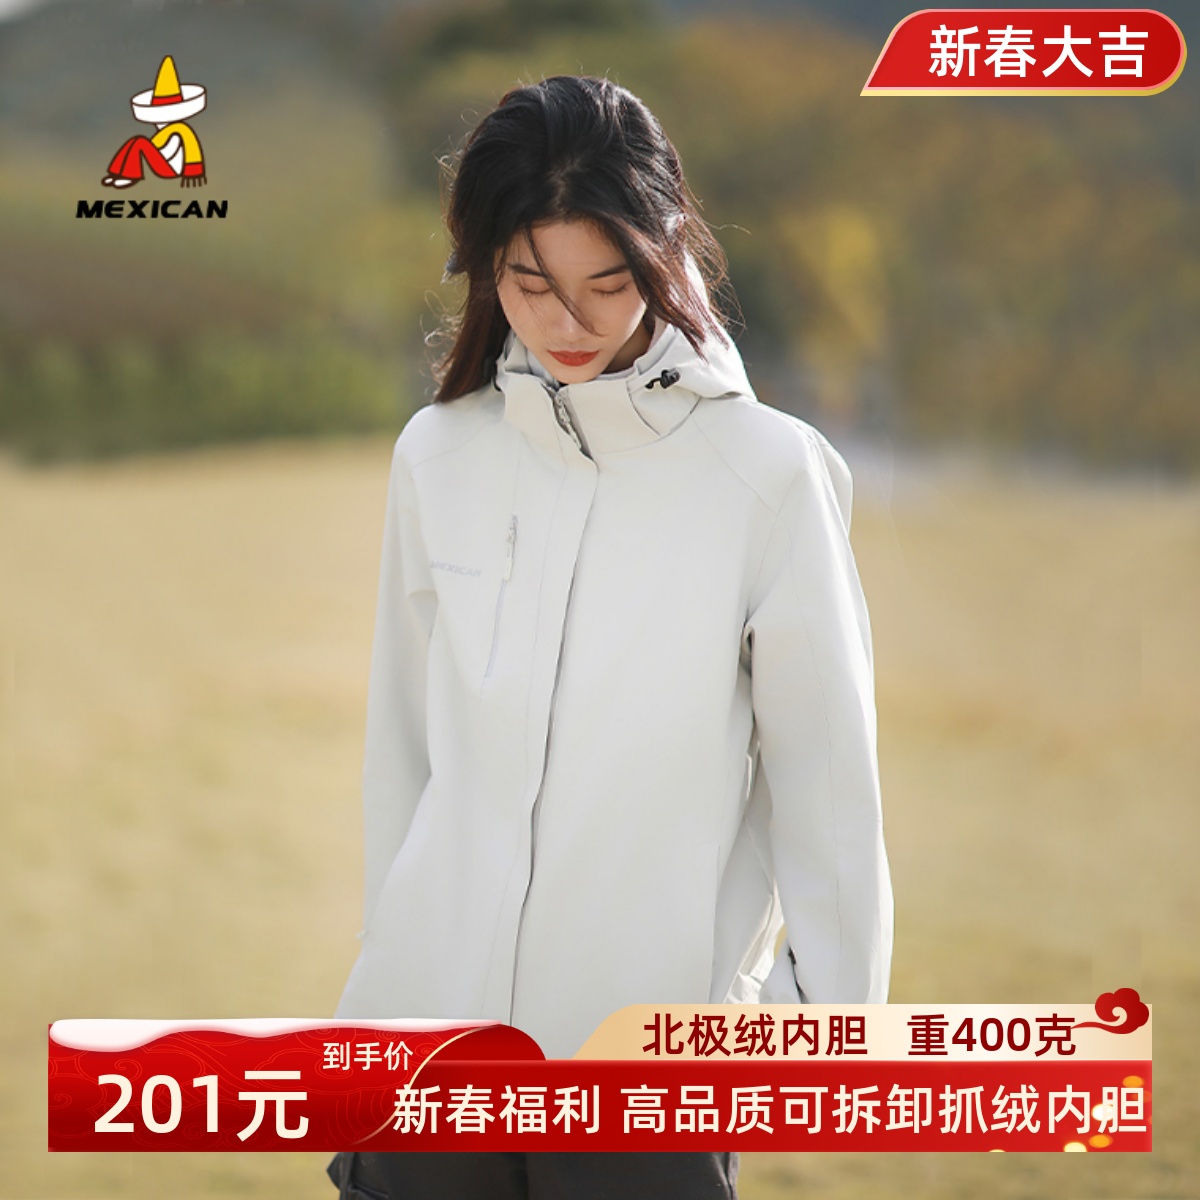 かかしアウトドアジャケット女性のスキーウェアスリーインワン取り外し可能防風防水秋と冬メンズ四川チベットジャケット